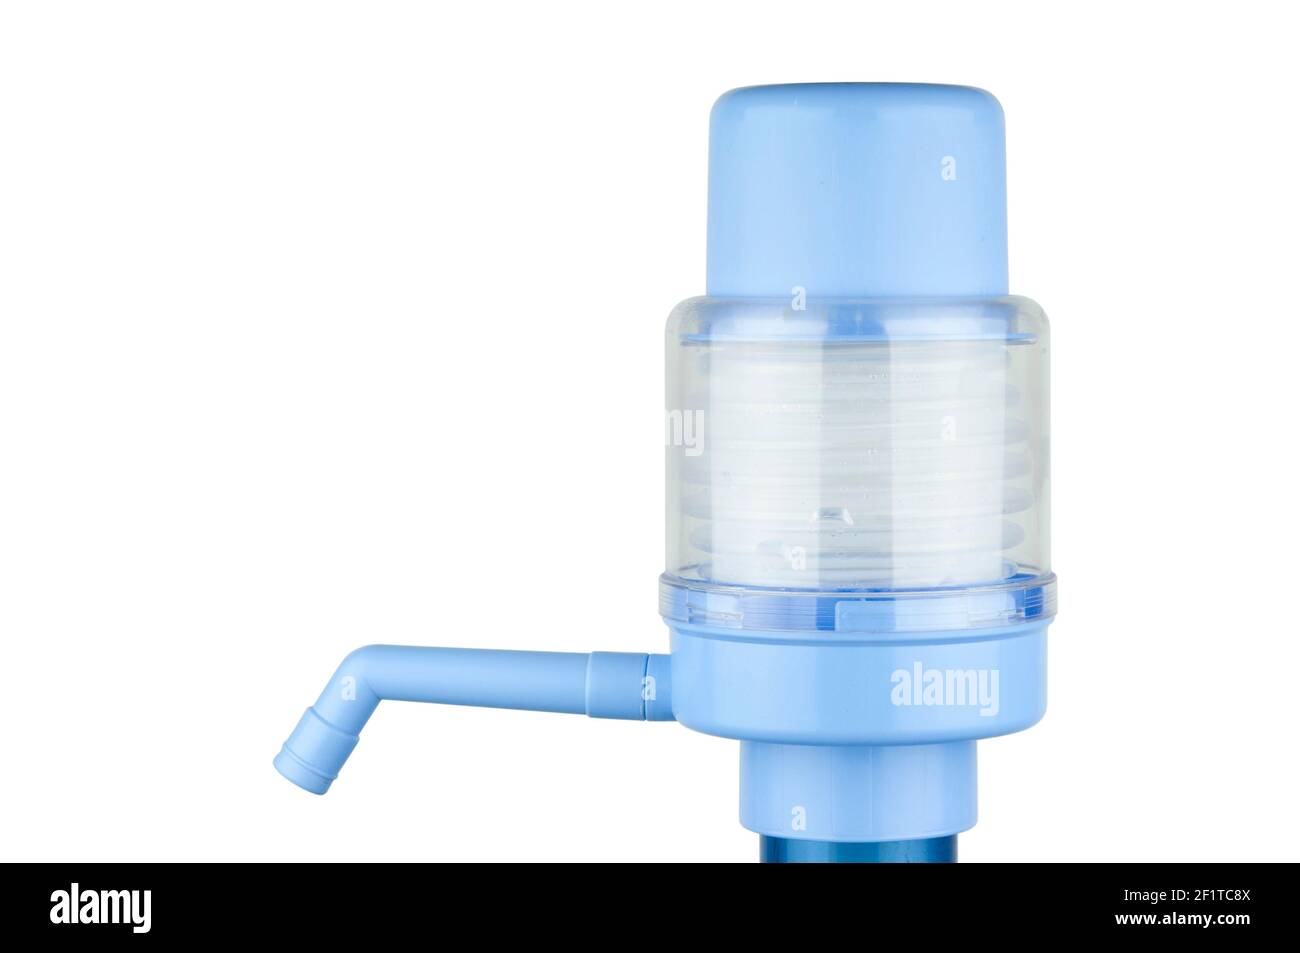 https://c8.alamy.com/compde/2f1tc8x/handwasserpumpe-wasserpumpe-fur-zu-hause-und-im-buro-isoliert-auf-weissem-hintergrund-trinkwasserflaschen-mit-manuellen-pumpspender-2f1tc8x.jpg